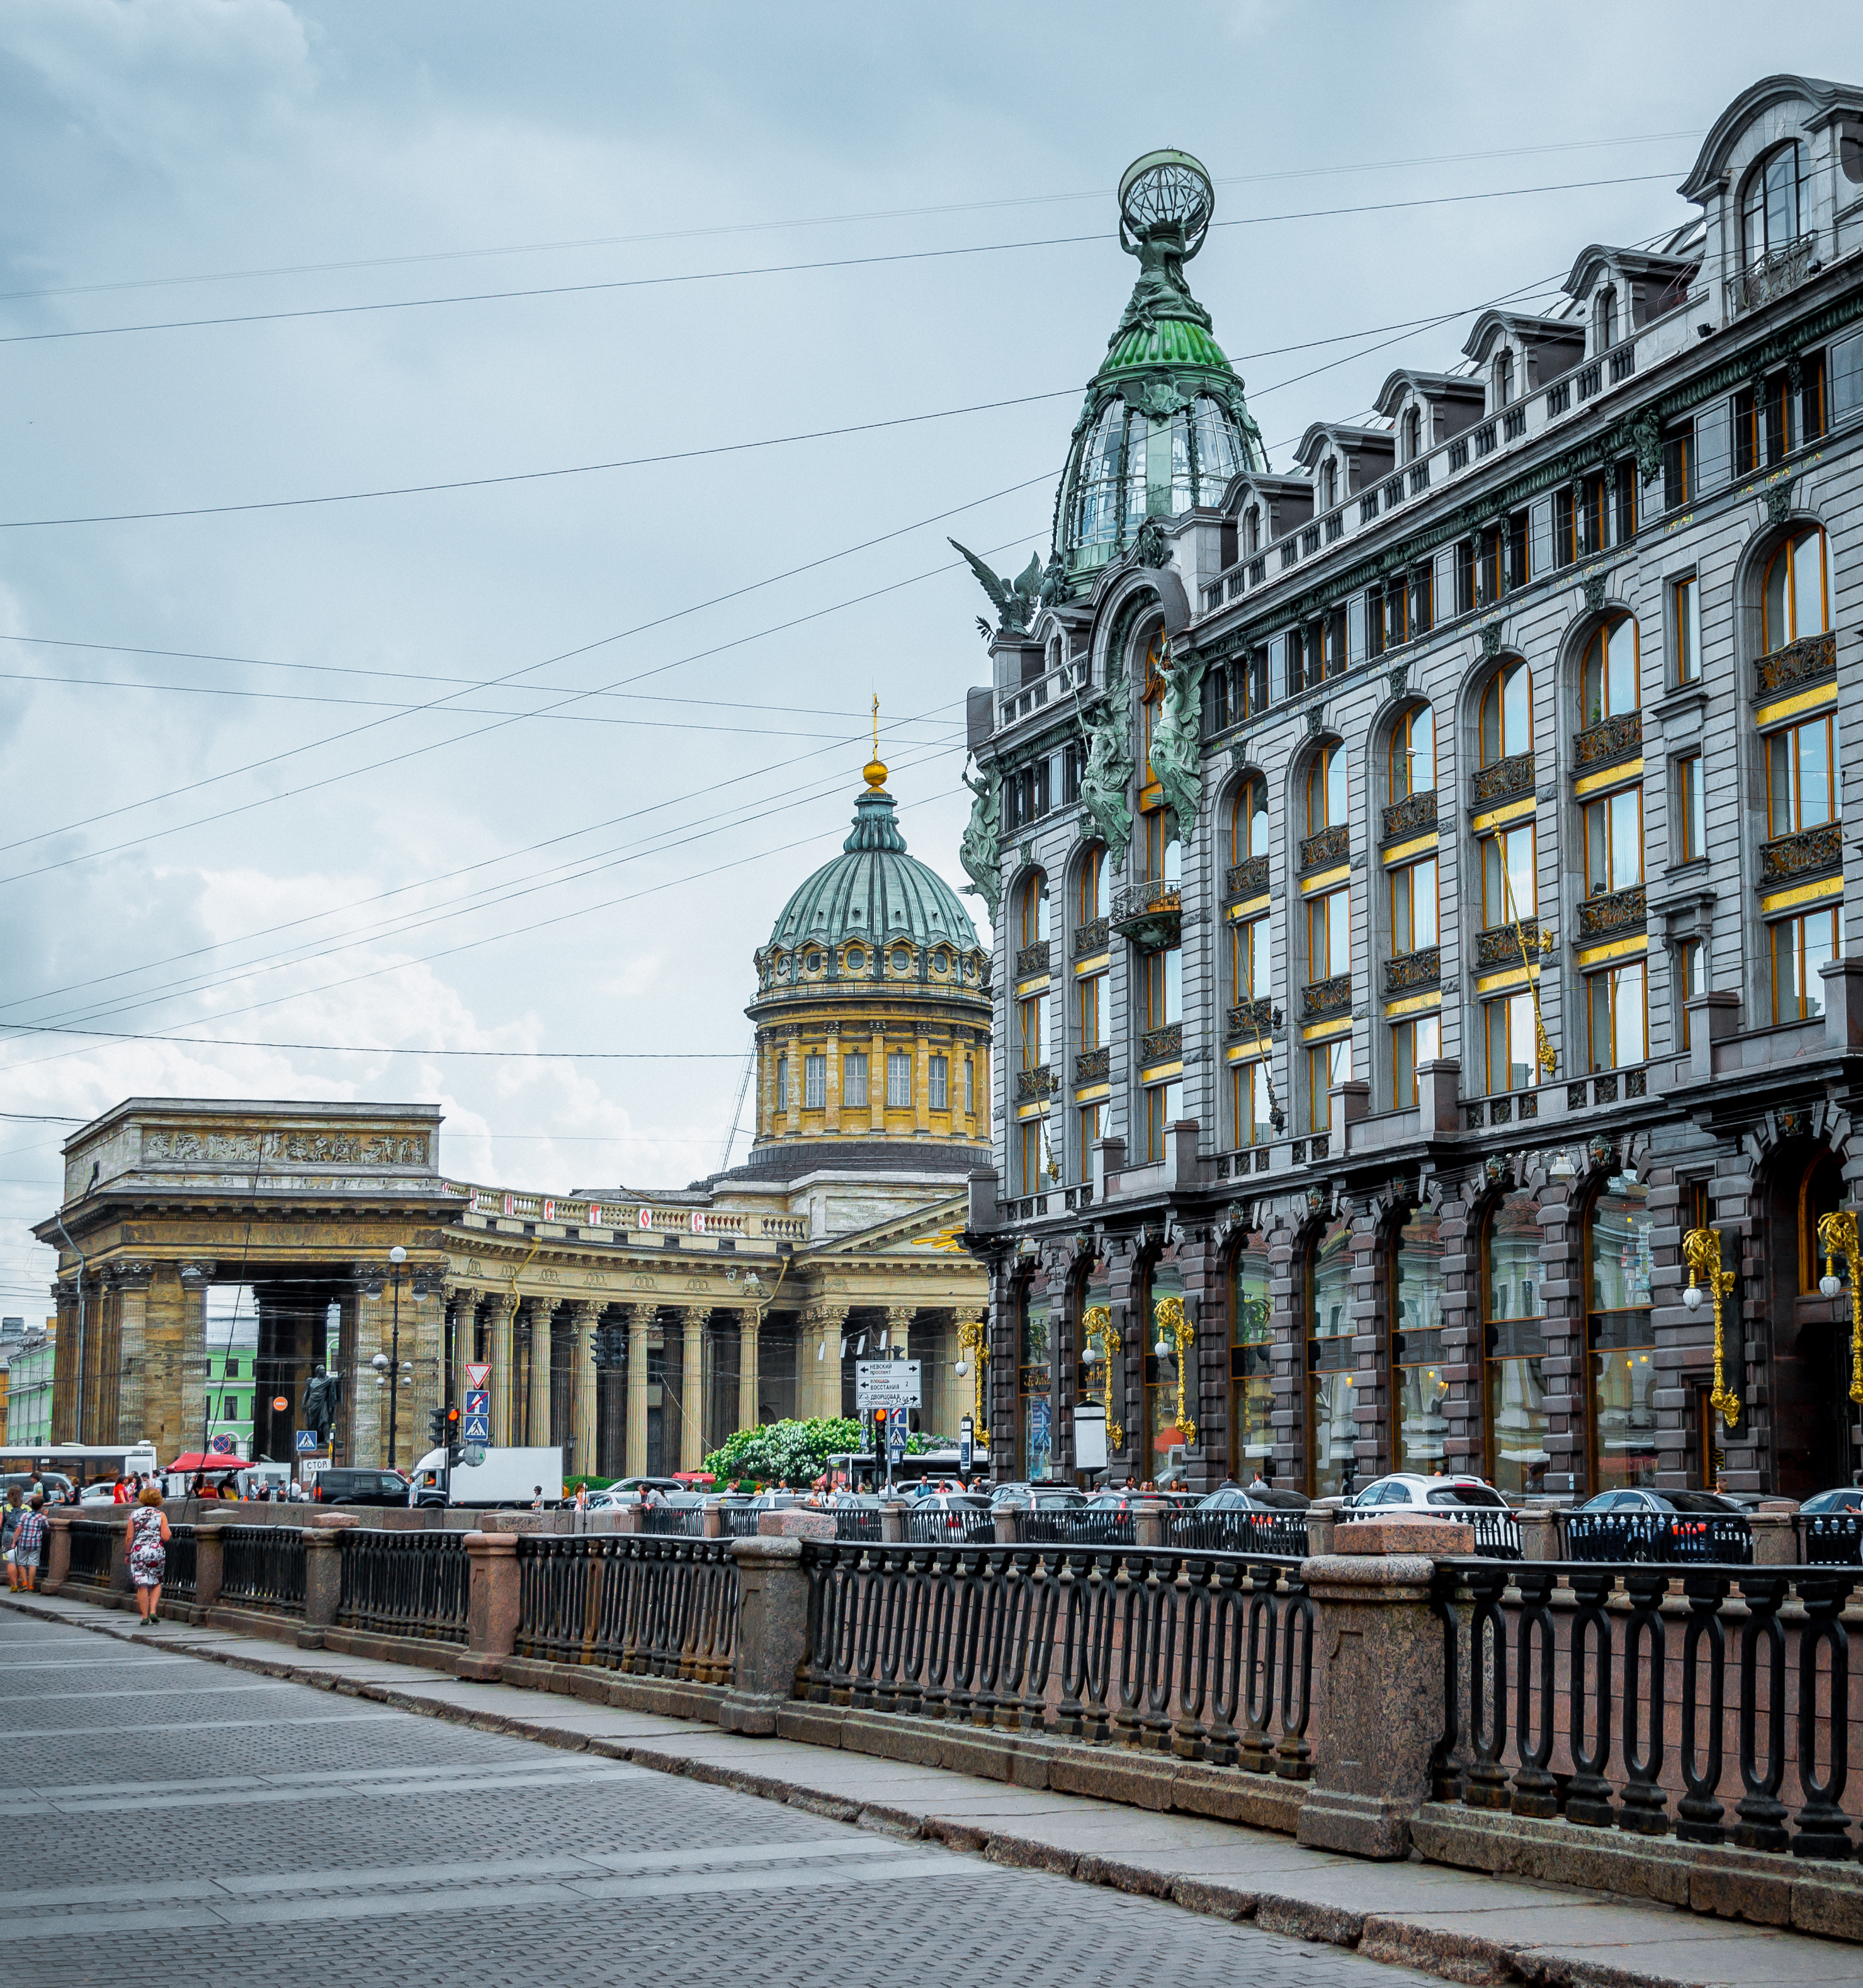 Вы можете арендовать автомобиль в Санкт-Петербурге и Краснодаре и проехаться по самым известным достопримечательностям города